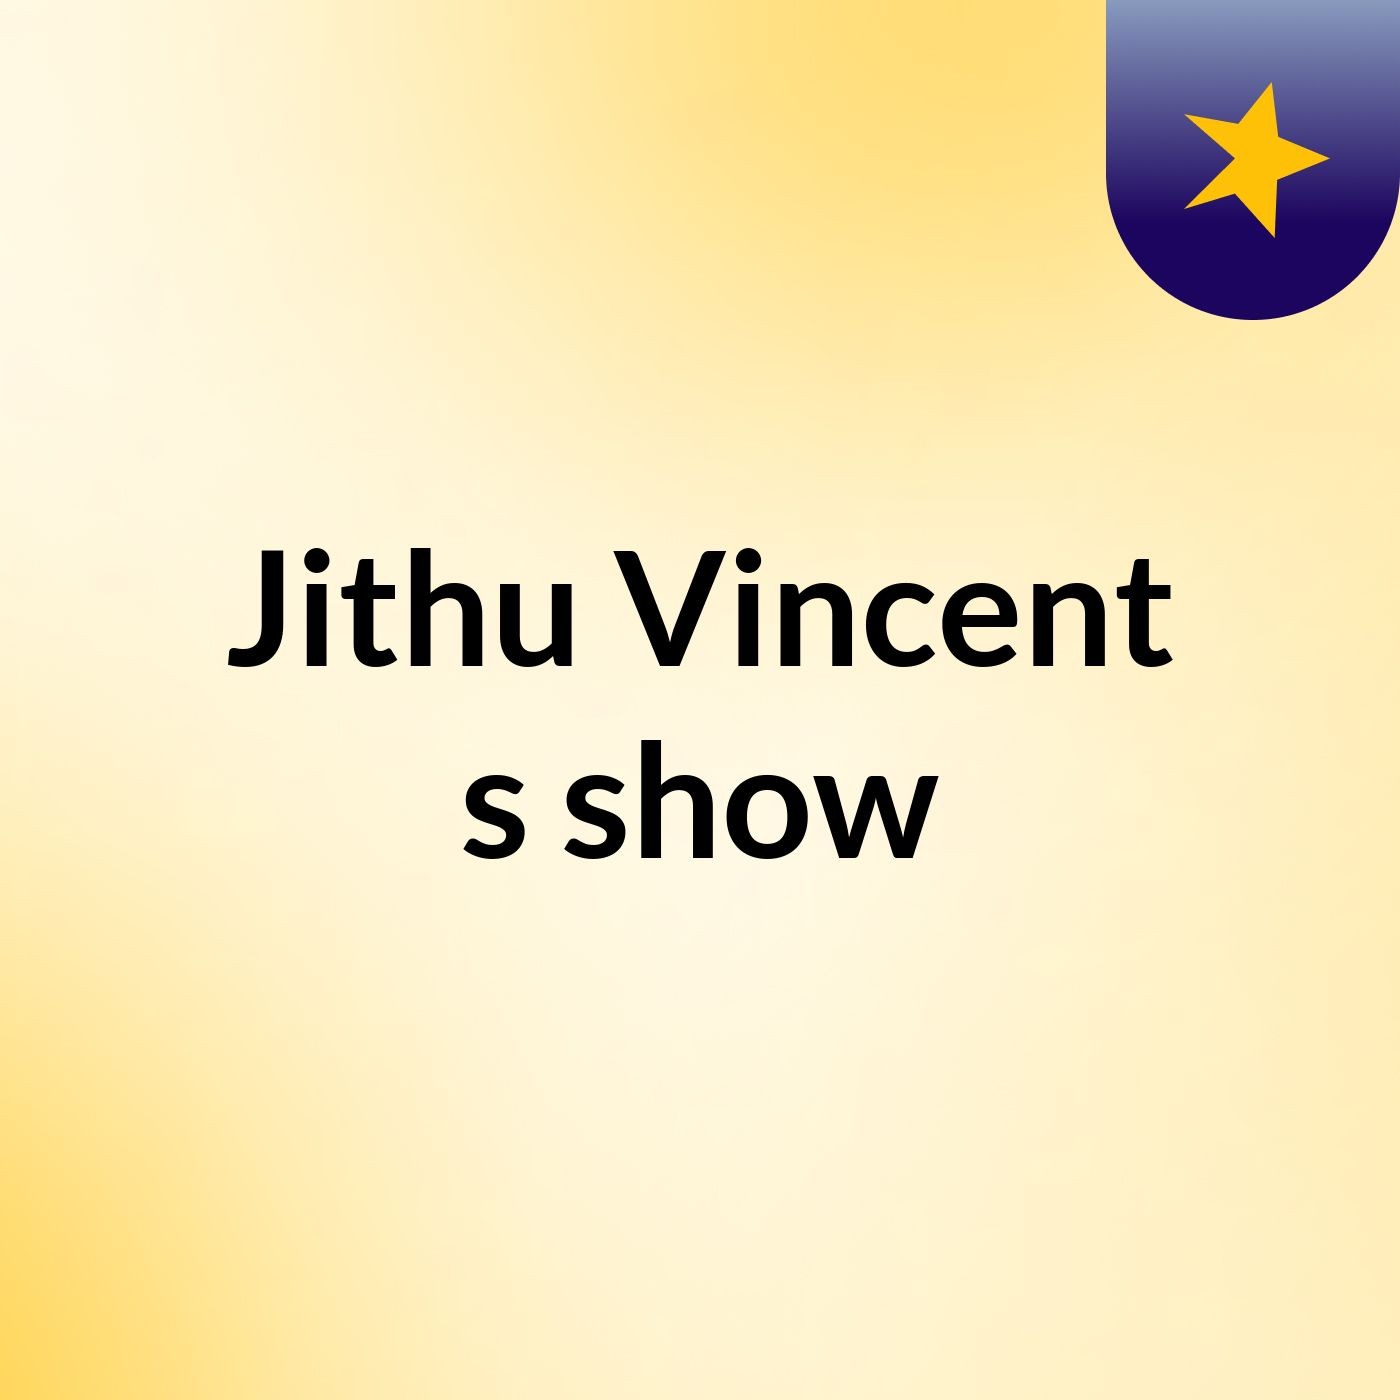 Jithu Vincent's show